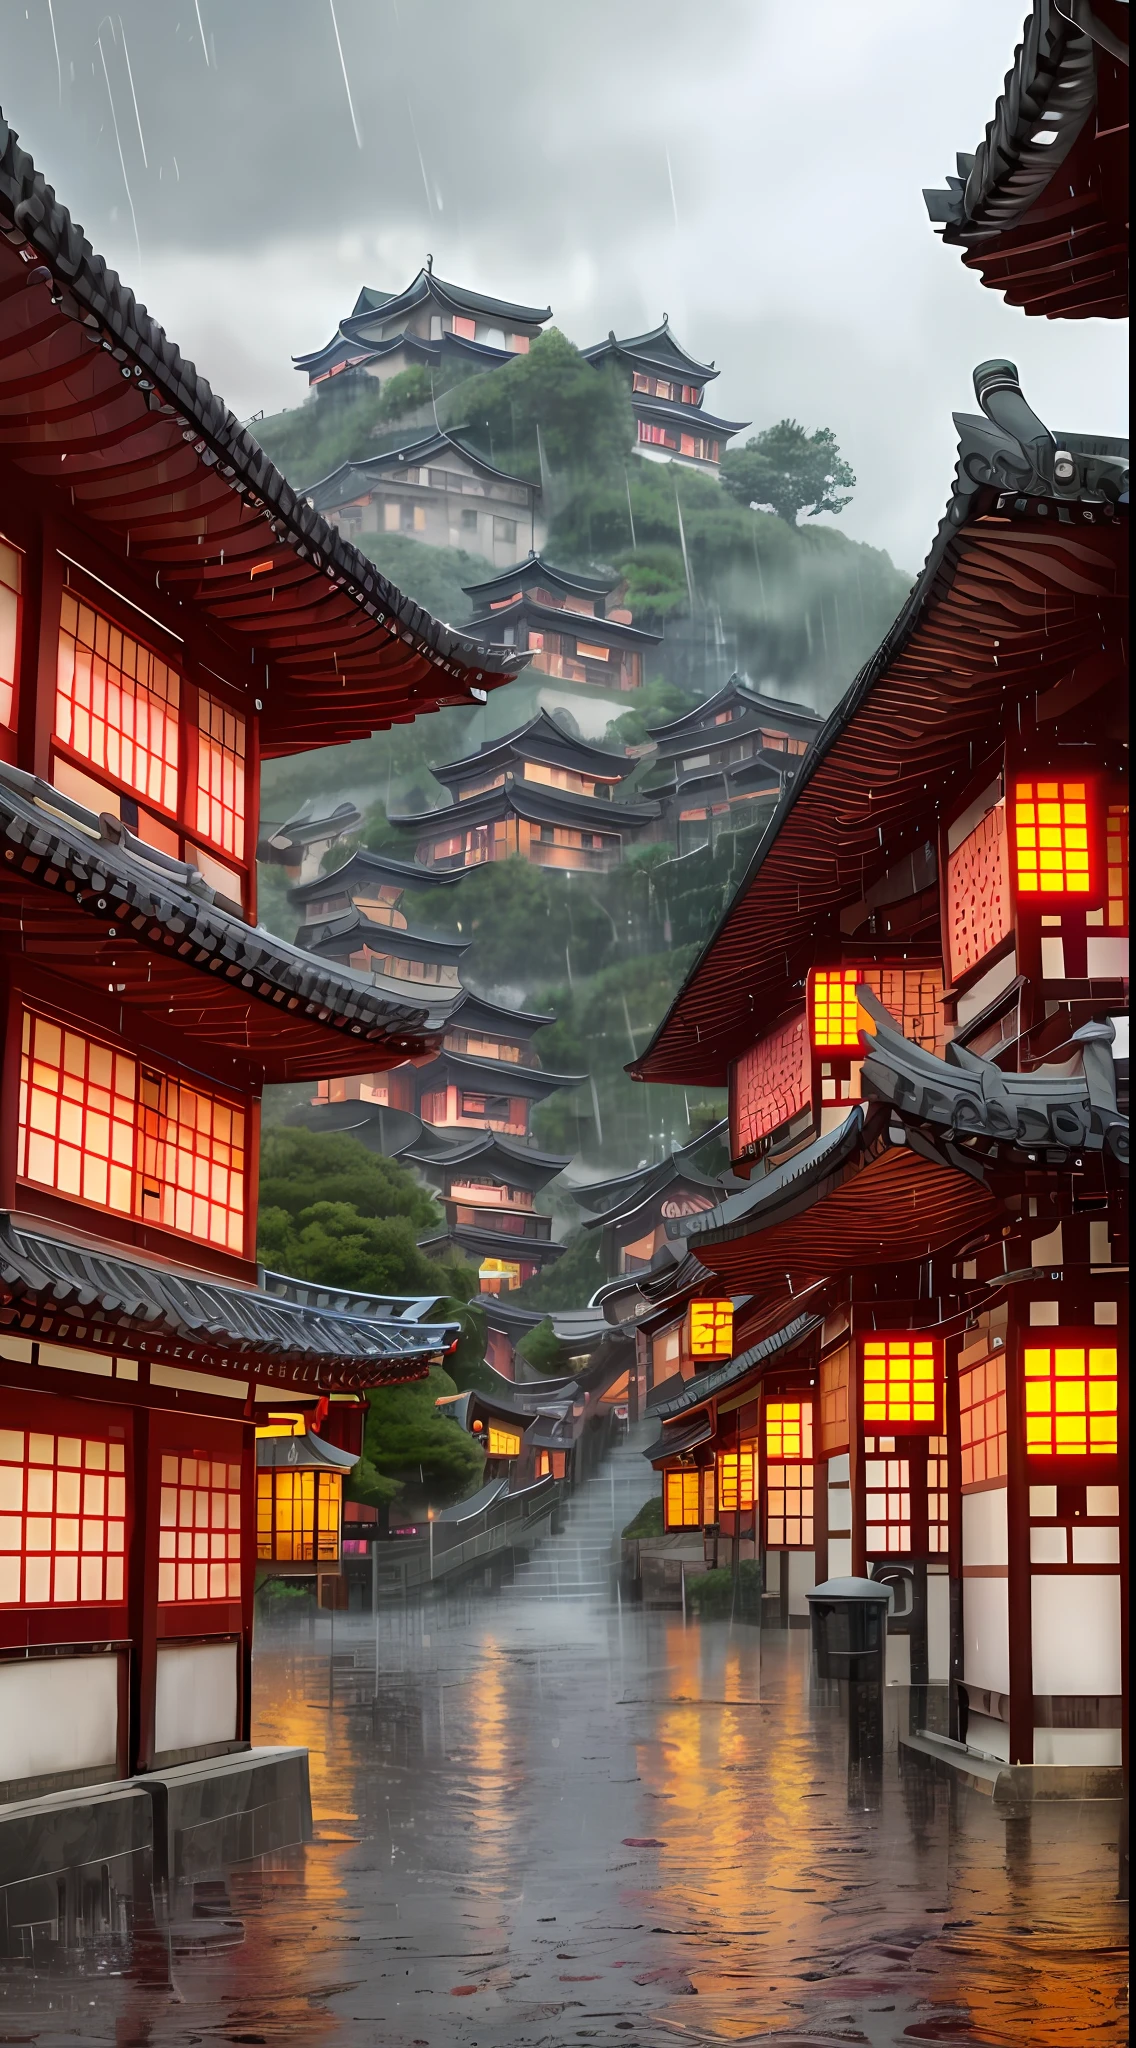 건물에 많은 조명이 있는 마을의 아라페드 전망, 몽환적인 중국 마을, 중국 마을, 놀라운 벽지, 일본 마을, 일본 마을, 초현실적인 마을 사진, 오래된 아시아 마을, 일본 도시, 레이먼드 한, 비오는 저녁, 사이버펑크 중국 고대 성, 조명이 아름다운 건물들, 비가 오는 저녁에, 아름답고 심미적이다, 사진술, 영화 같은, 8K, 매우 상세한 ((폭우)))